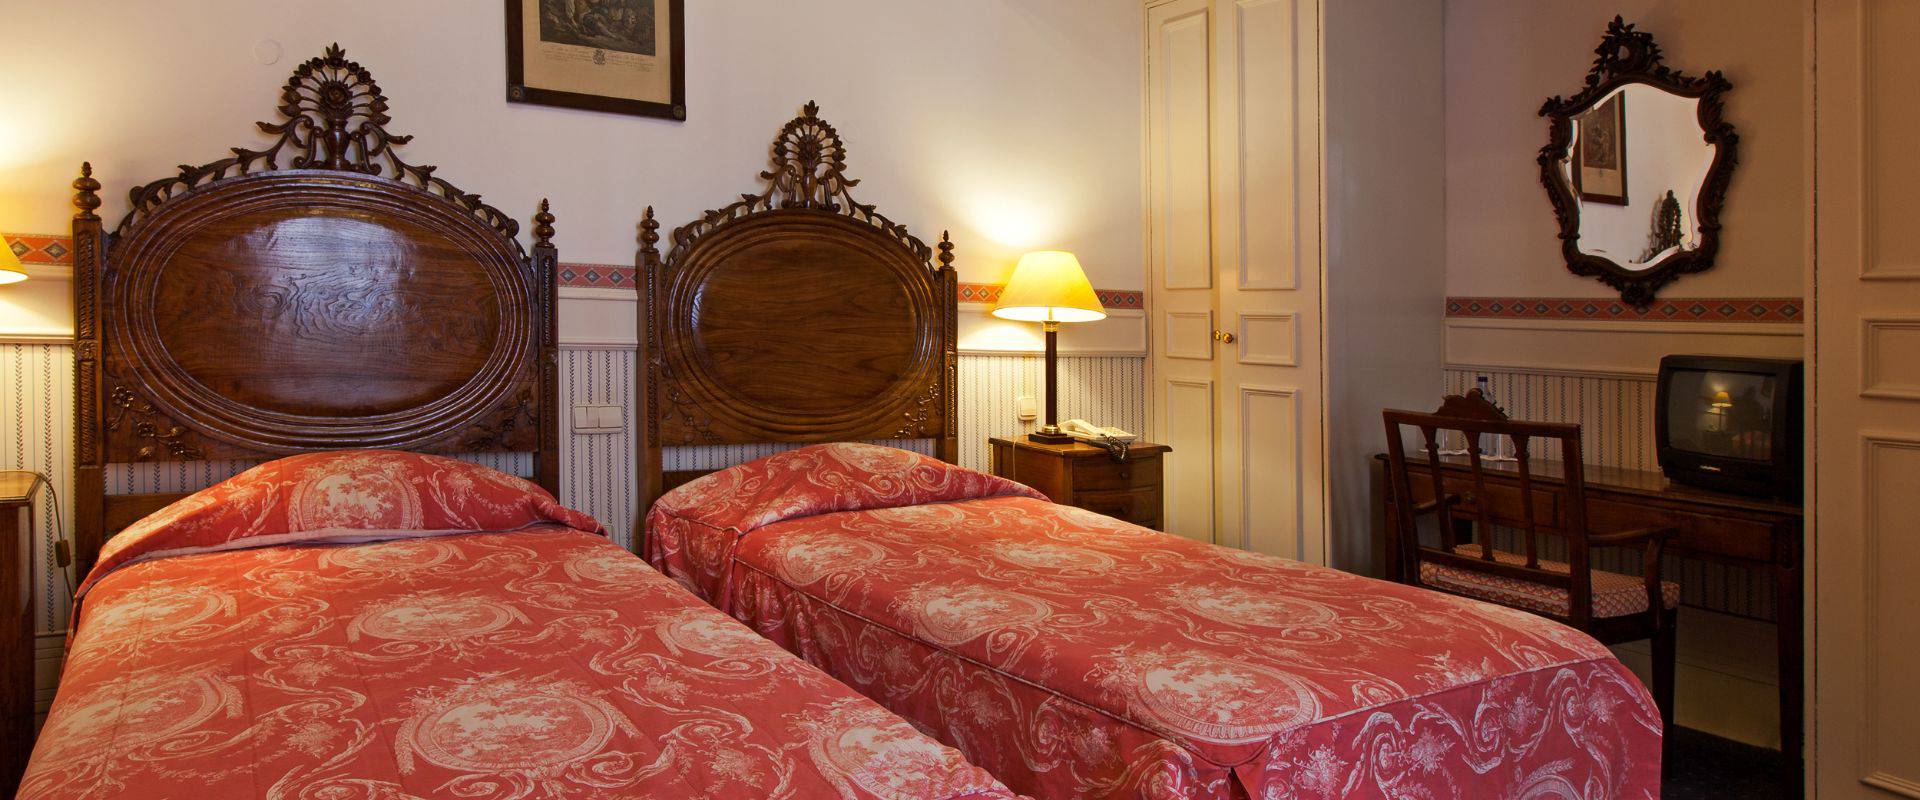 Quarto superior com cama adicional  Palace Hotel Bussaco Coimbra